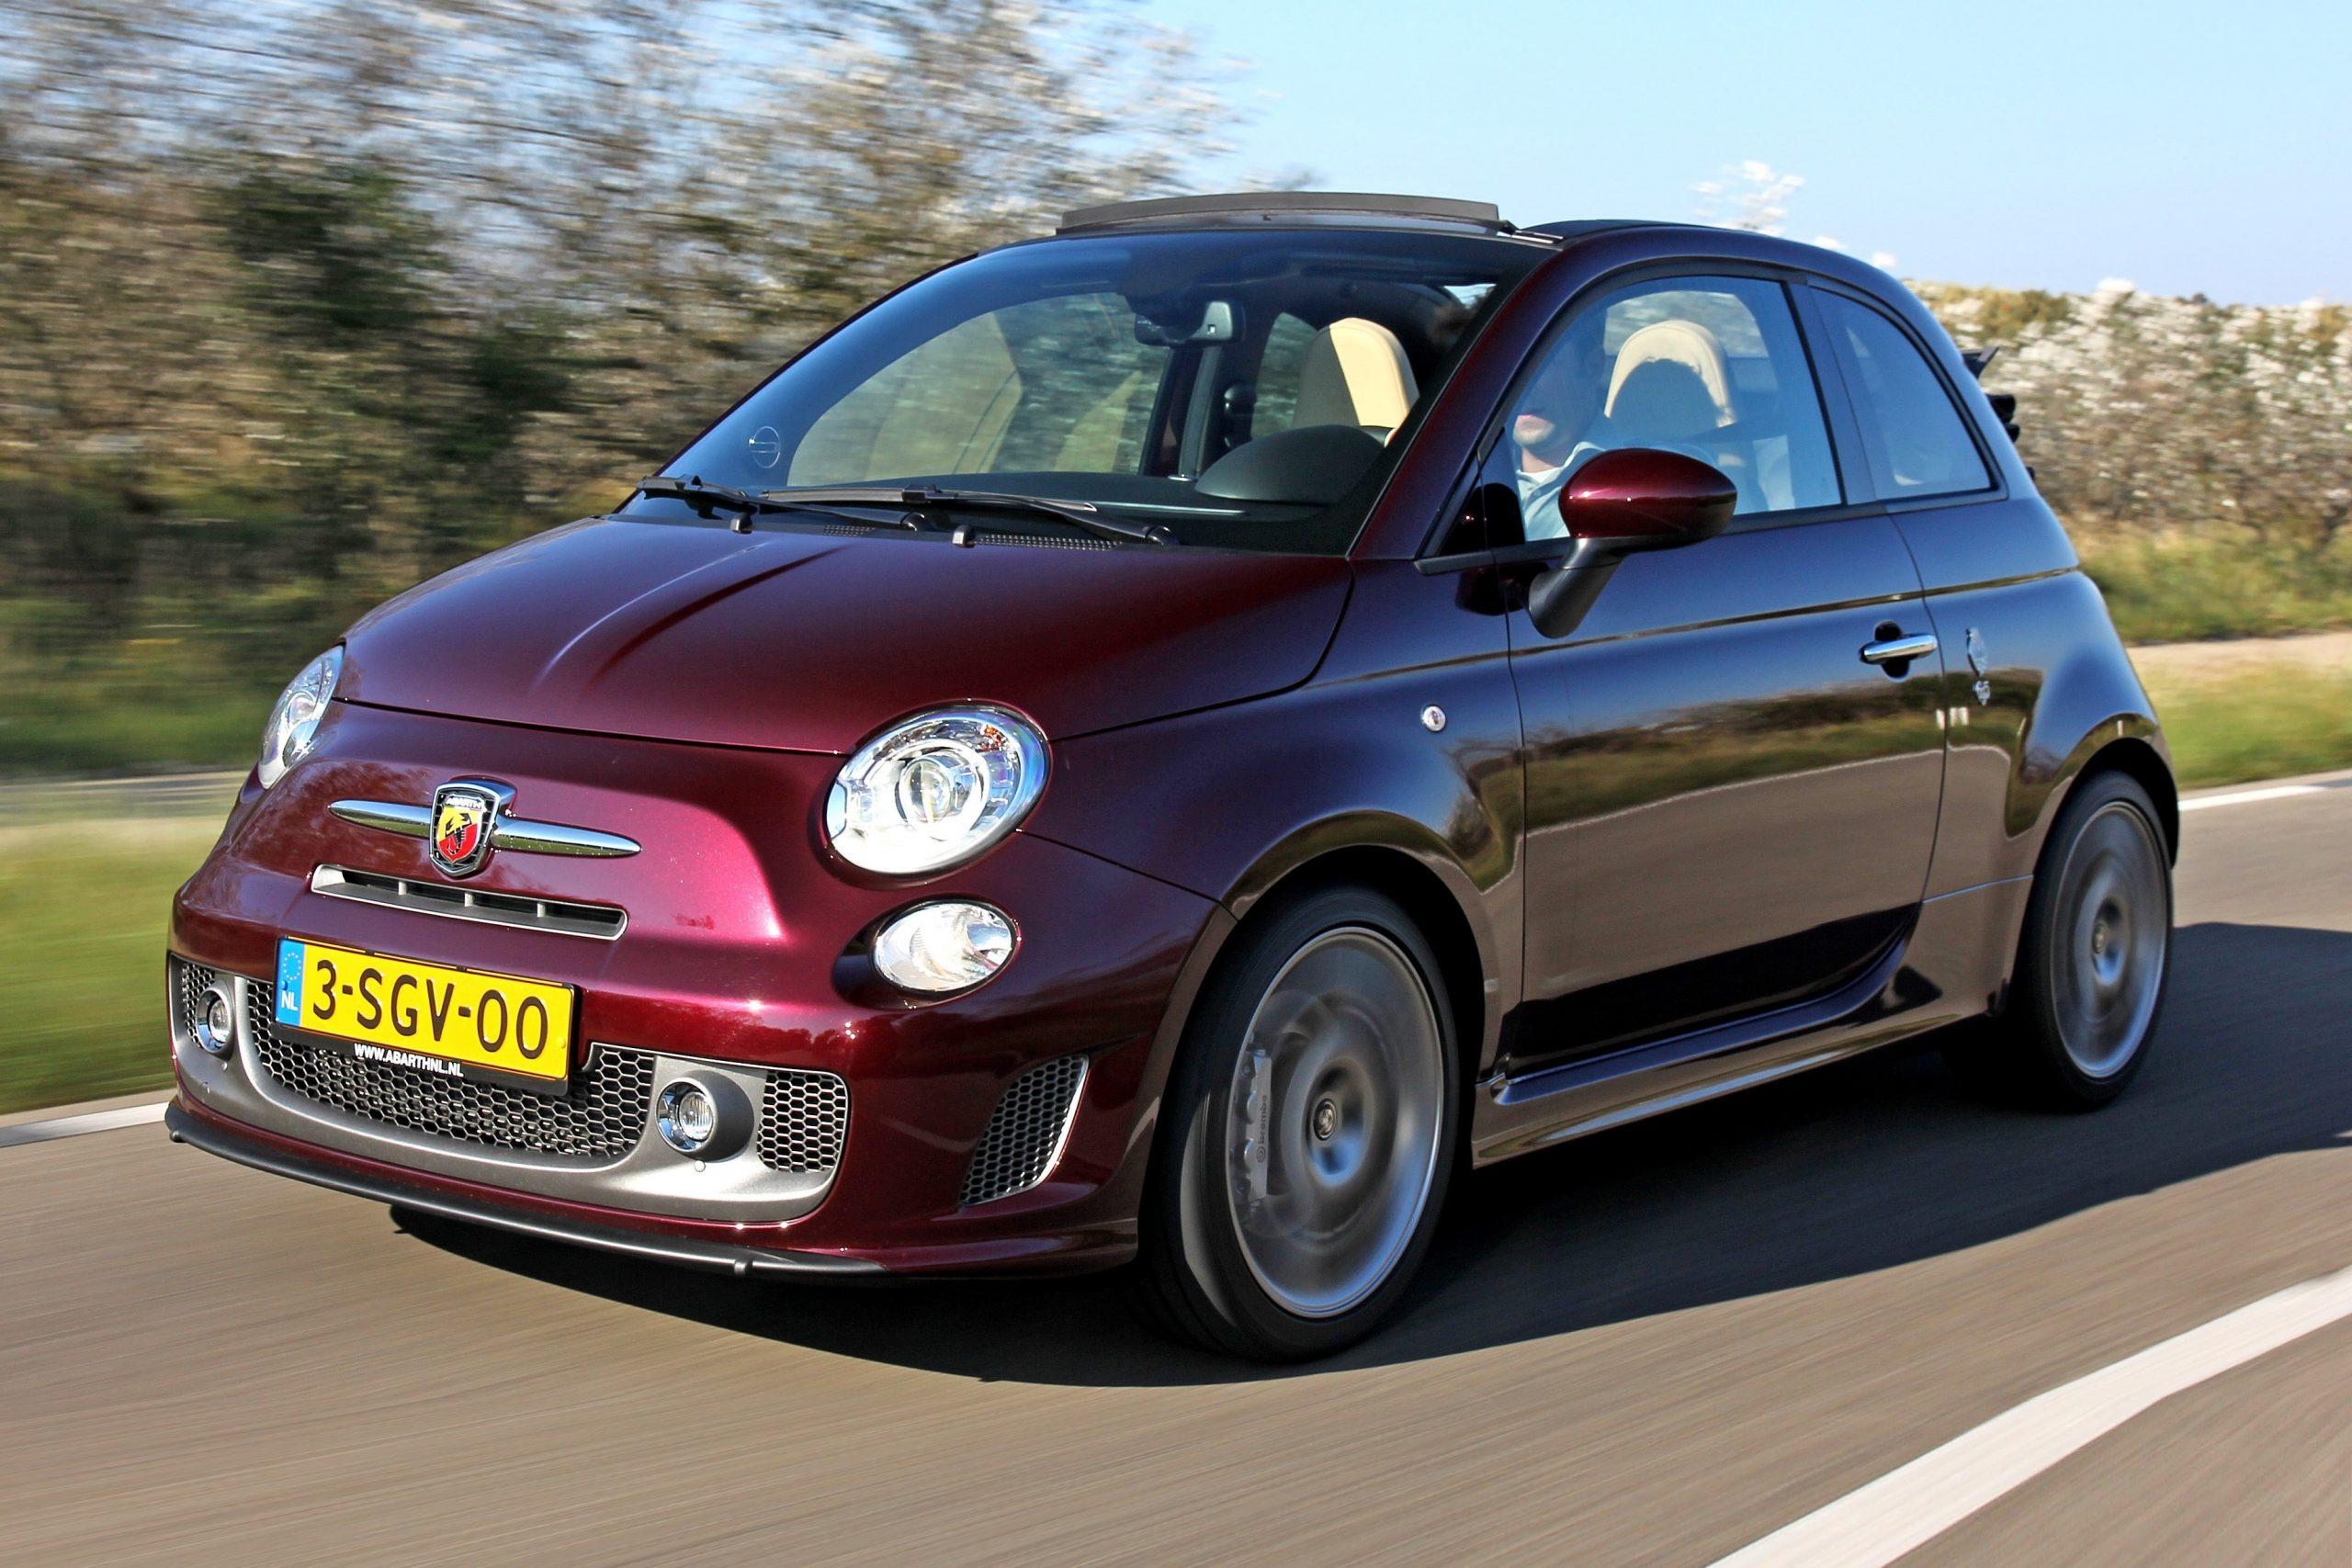 Alstublieft systematisch Gunst Tweedehands Fiat 500 Abarth begint betaalbaar te worden - TopGear NL